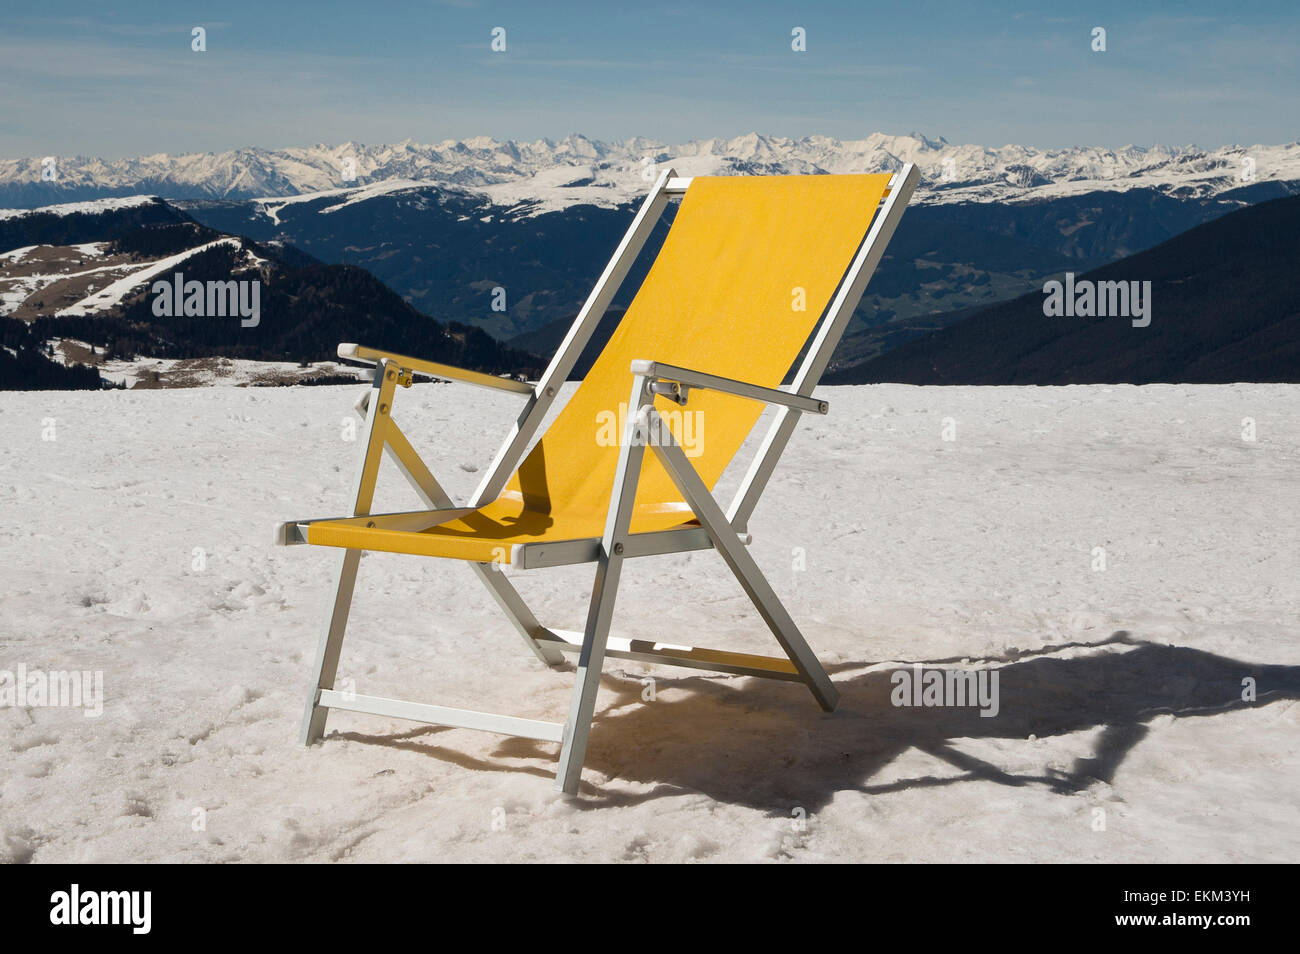 Gelbe Liegestuhl auf Schnee Berg mit Schnee Berge bedeckt Stockfotografie -  Alamy